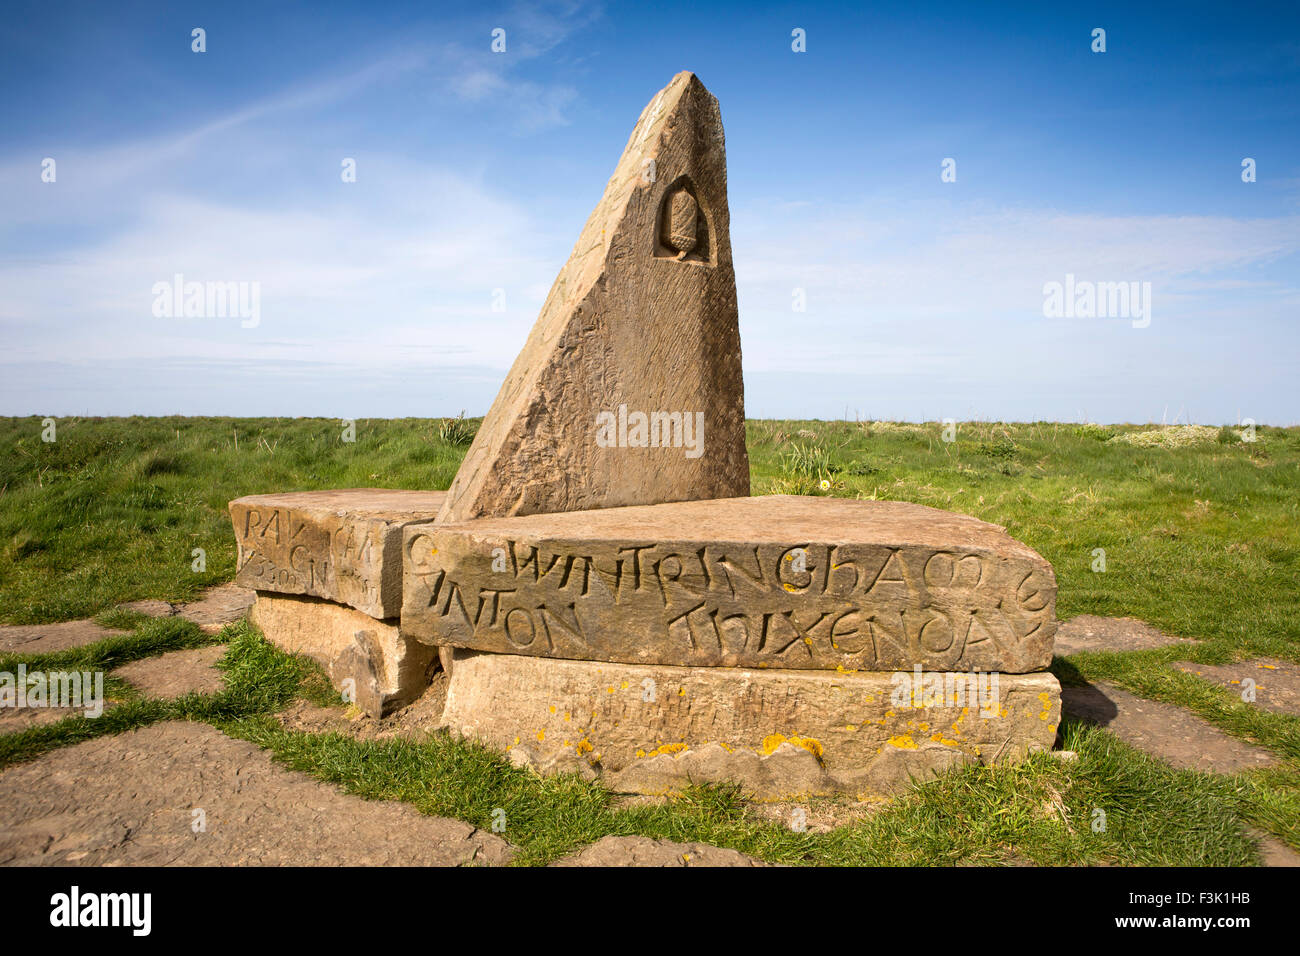 Regno Unito, Inghilterra, Yorkshire East Riding, Filey Brigg, Wolds Way a piedi il marcatore di inizio la pietra che mostra i nomi delle frazioni en route Foto Stock